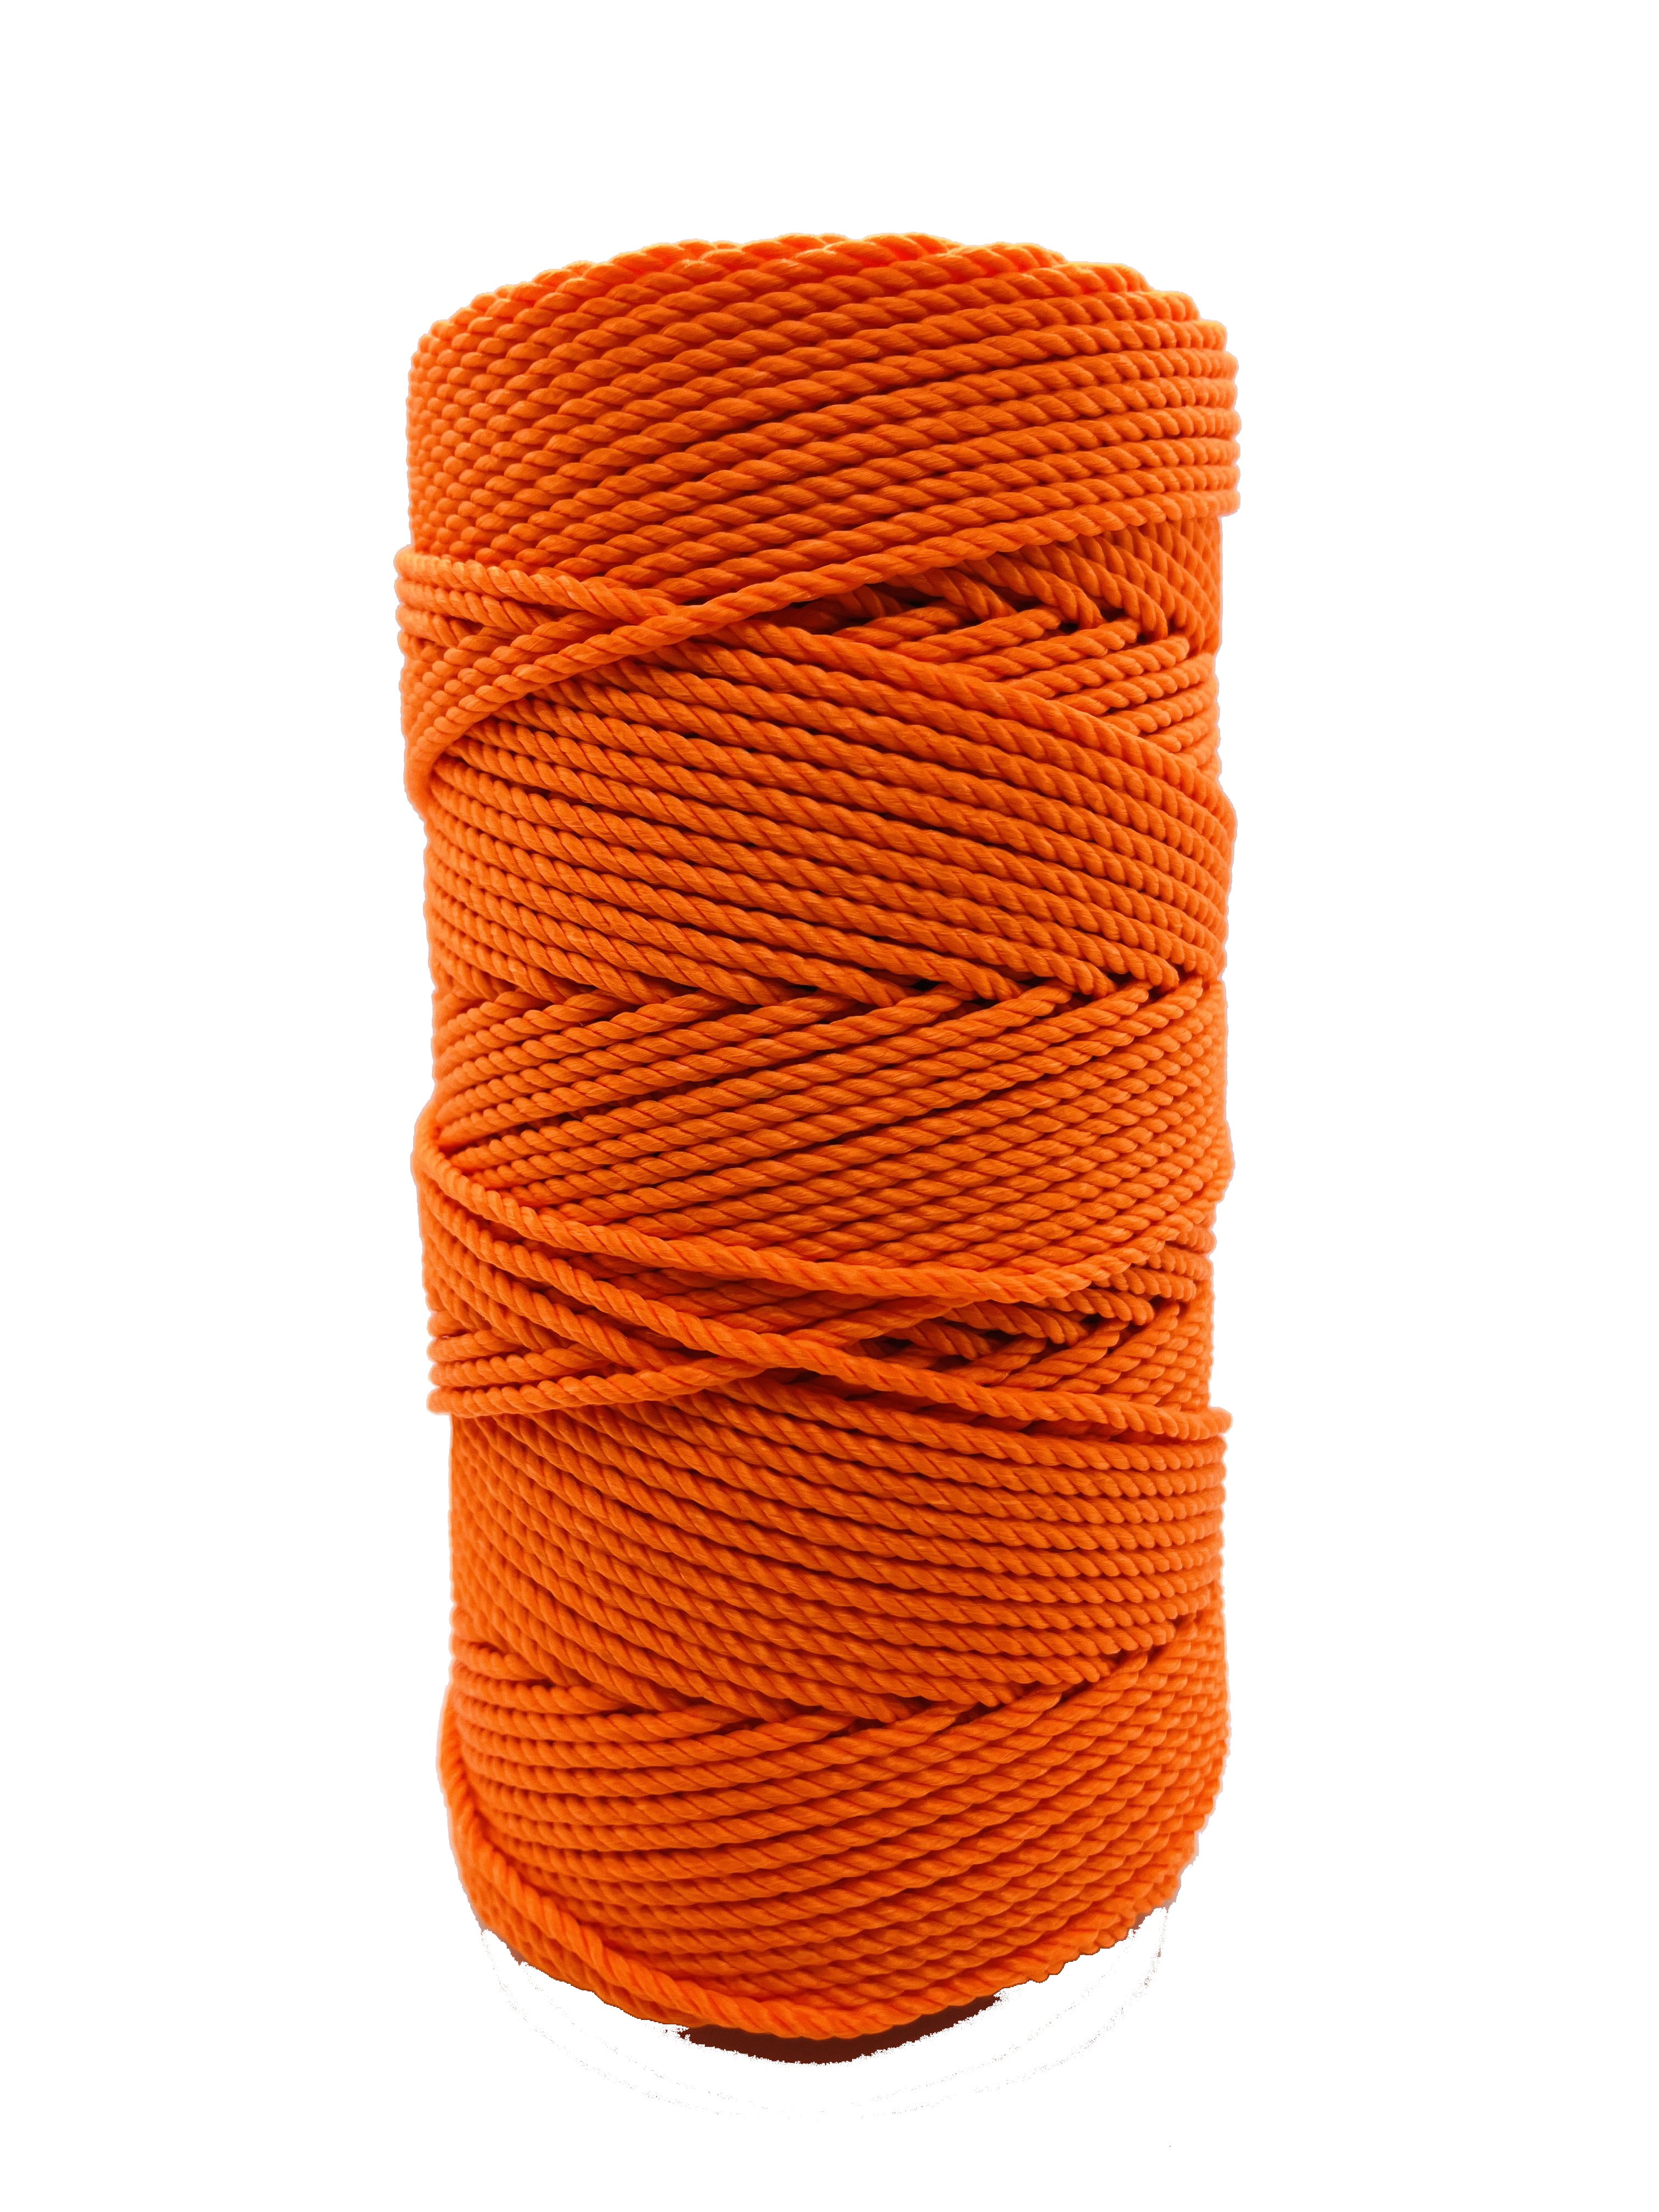 Orange - Twine by Design